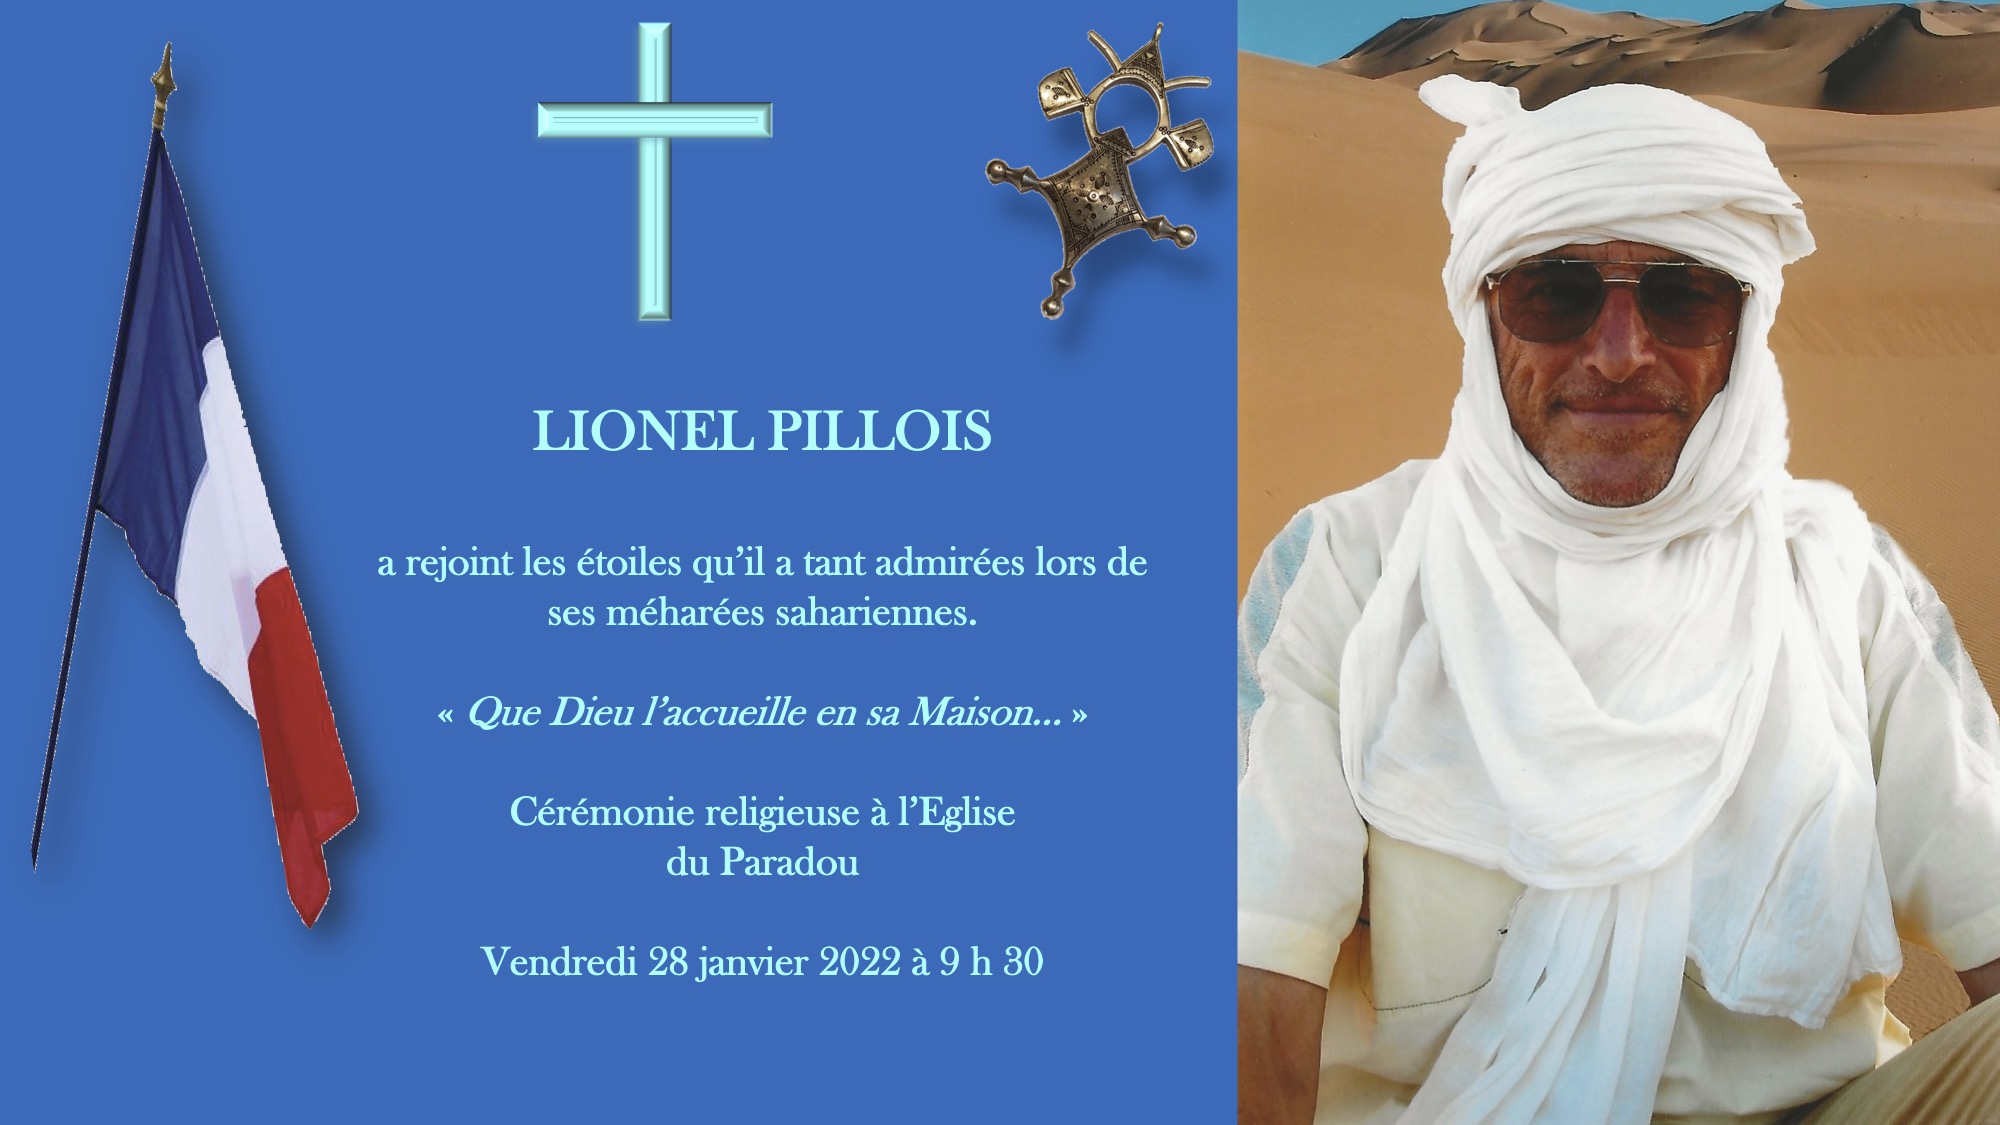 PILLOIS Lionel 1